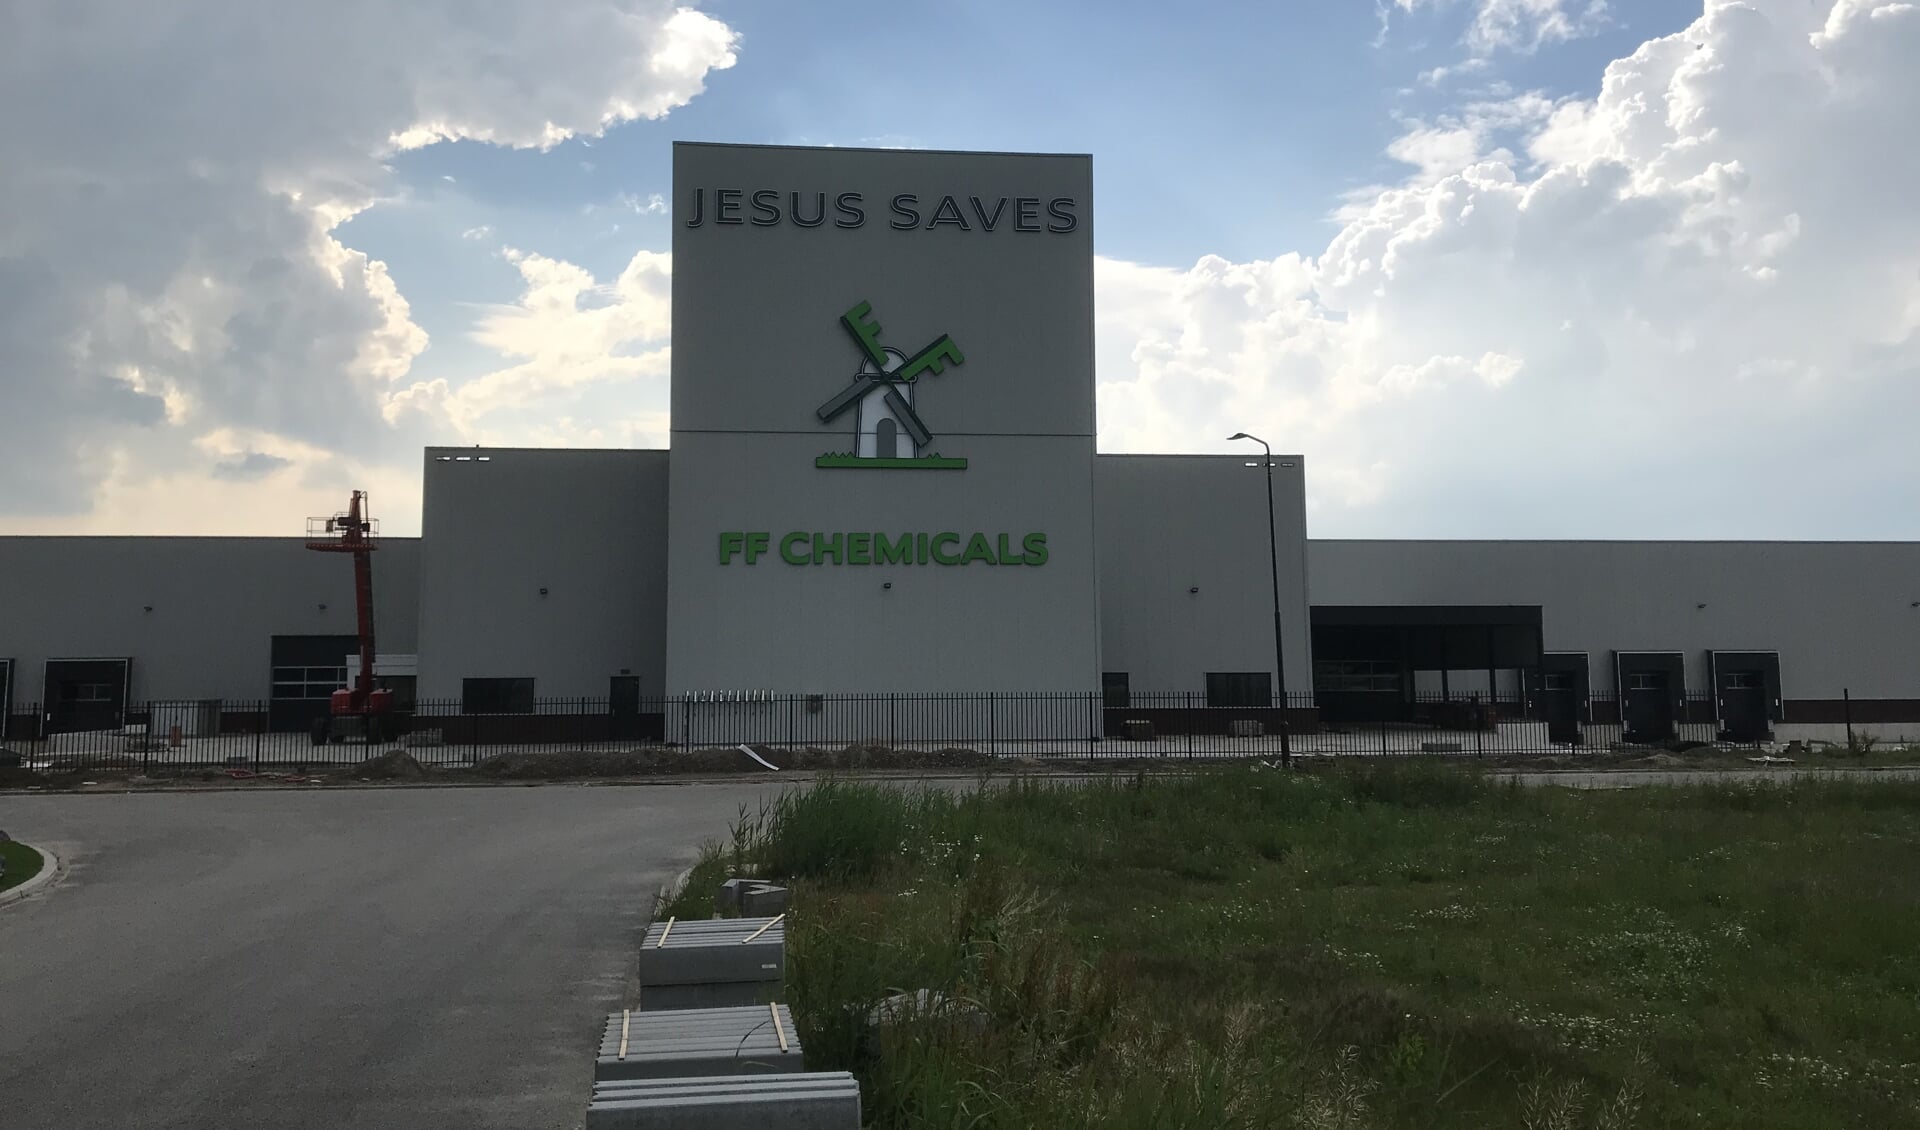 Het pand van FF Chemicals in Werkendam met daarop de tekst 'Jesus saves'.